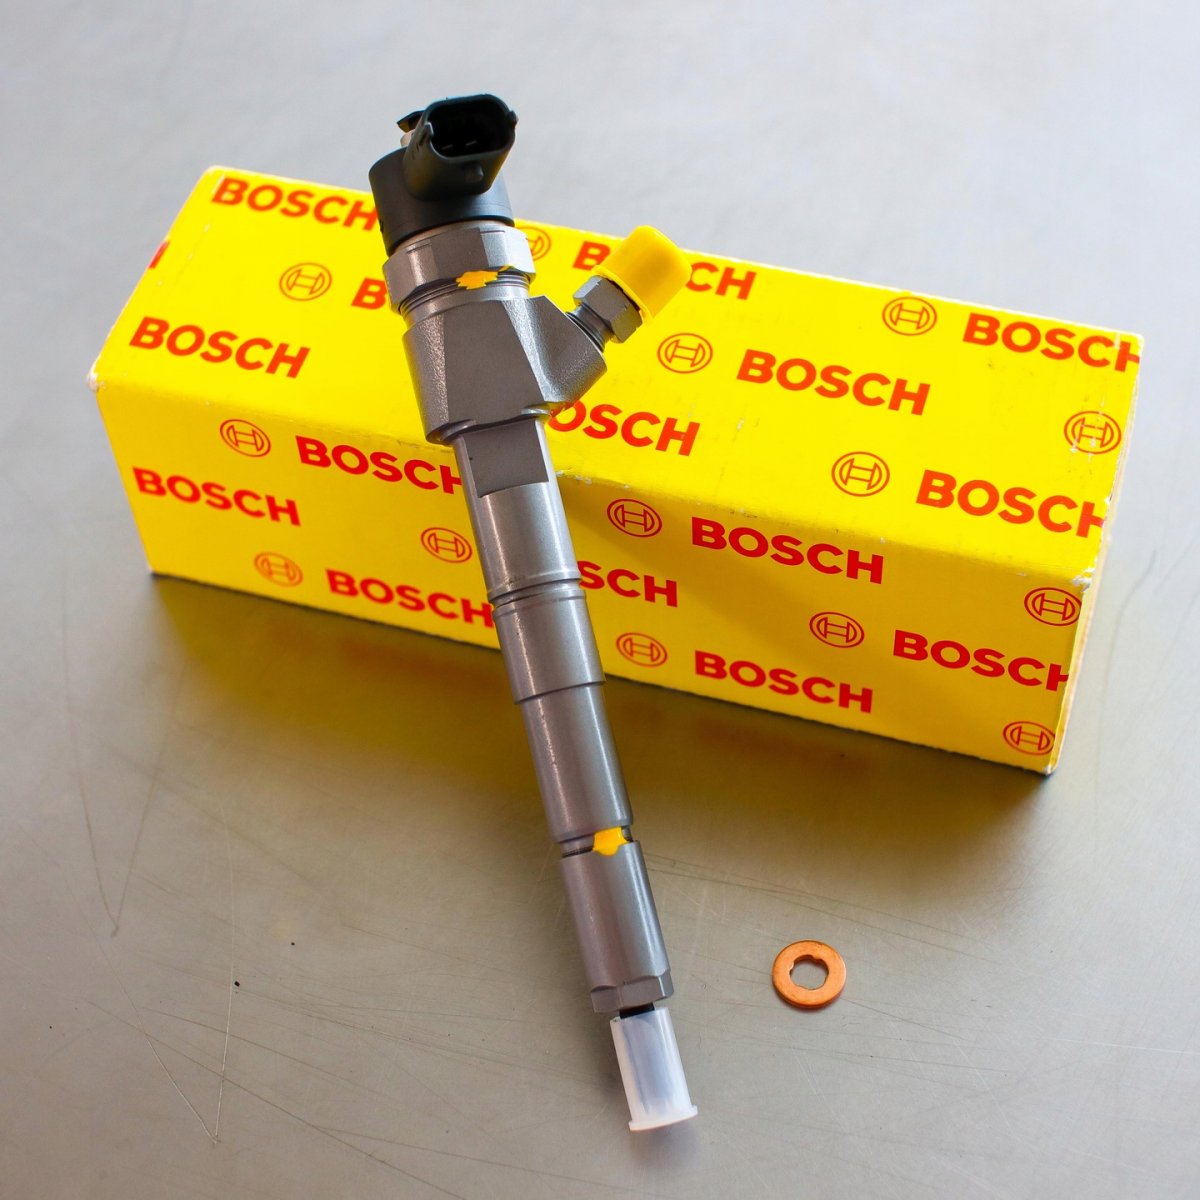 Wtryskiwacz Bosch zregenerowany przygotowany do wysyłki do Klienta na gwarancji na okres 24 miesięcy w atrakcyjnej cenie